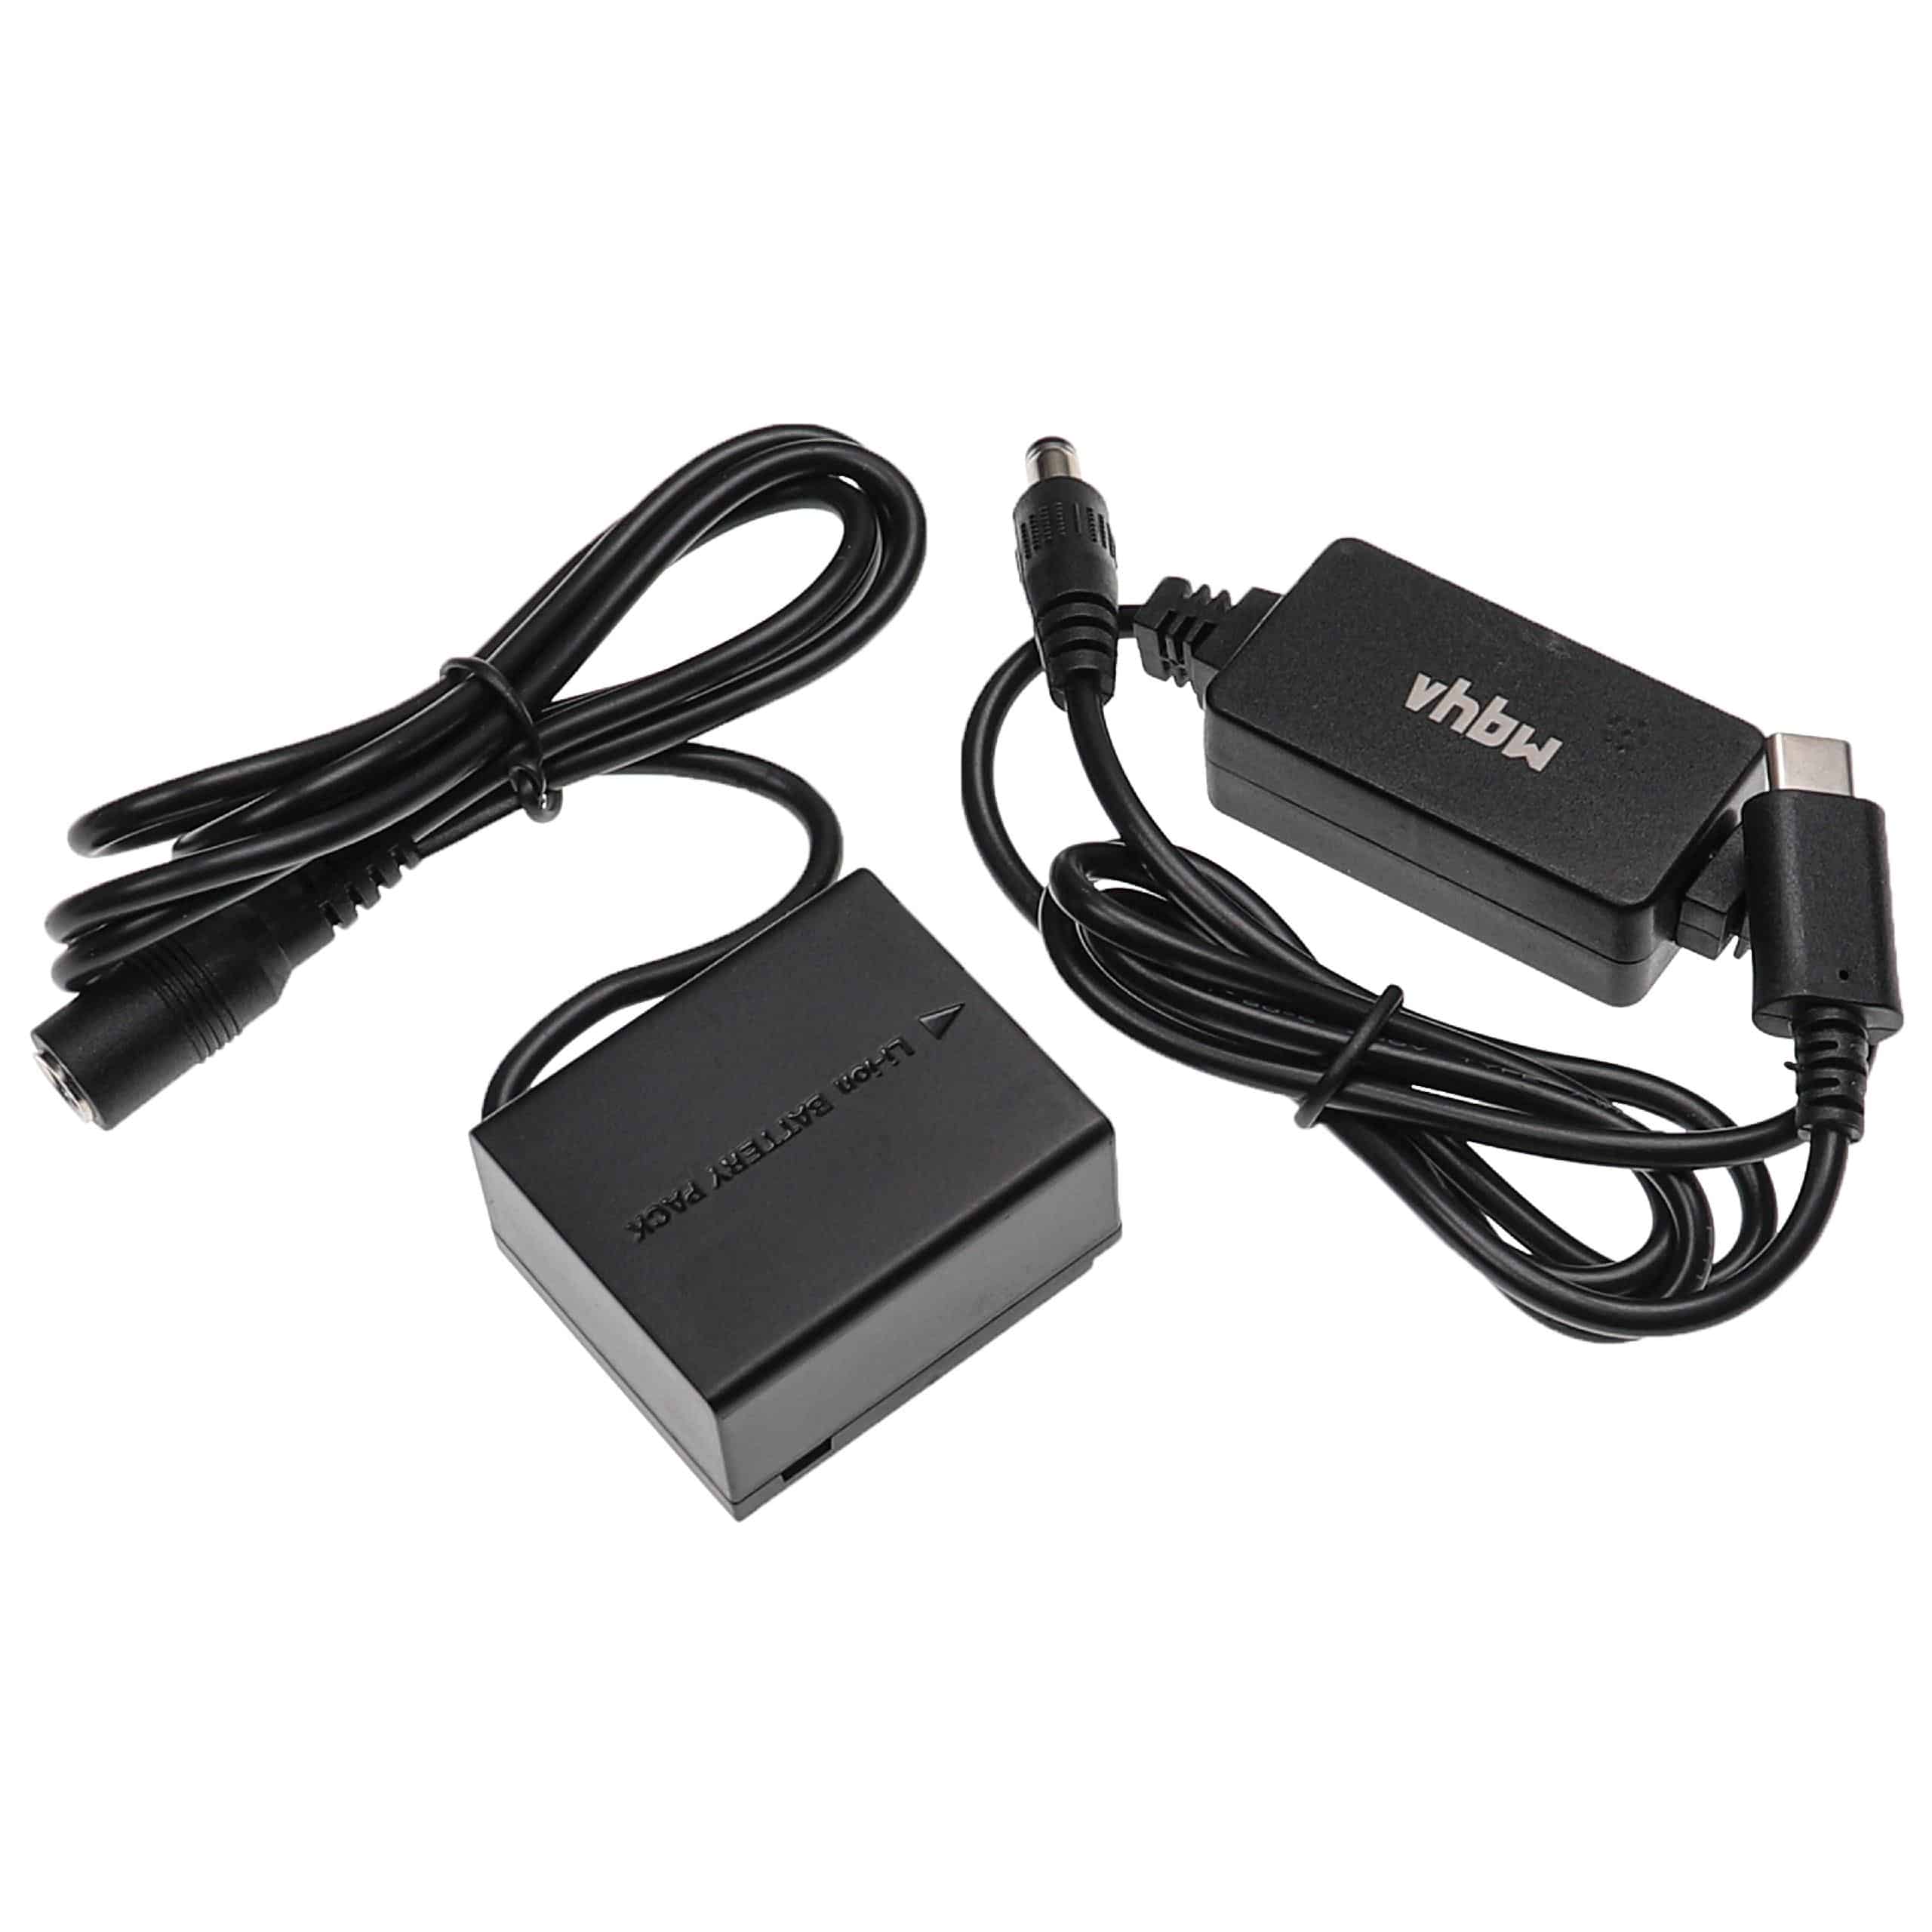 USB Netzteil als Ersatz für Panasonic DMW-AC8 für Kamera + DC Kuppler ersetzt Panasonic DMW-DCC3